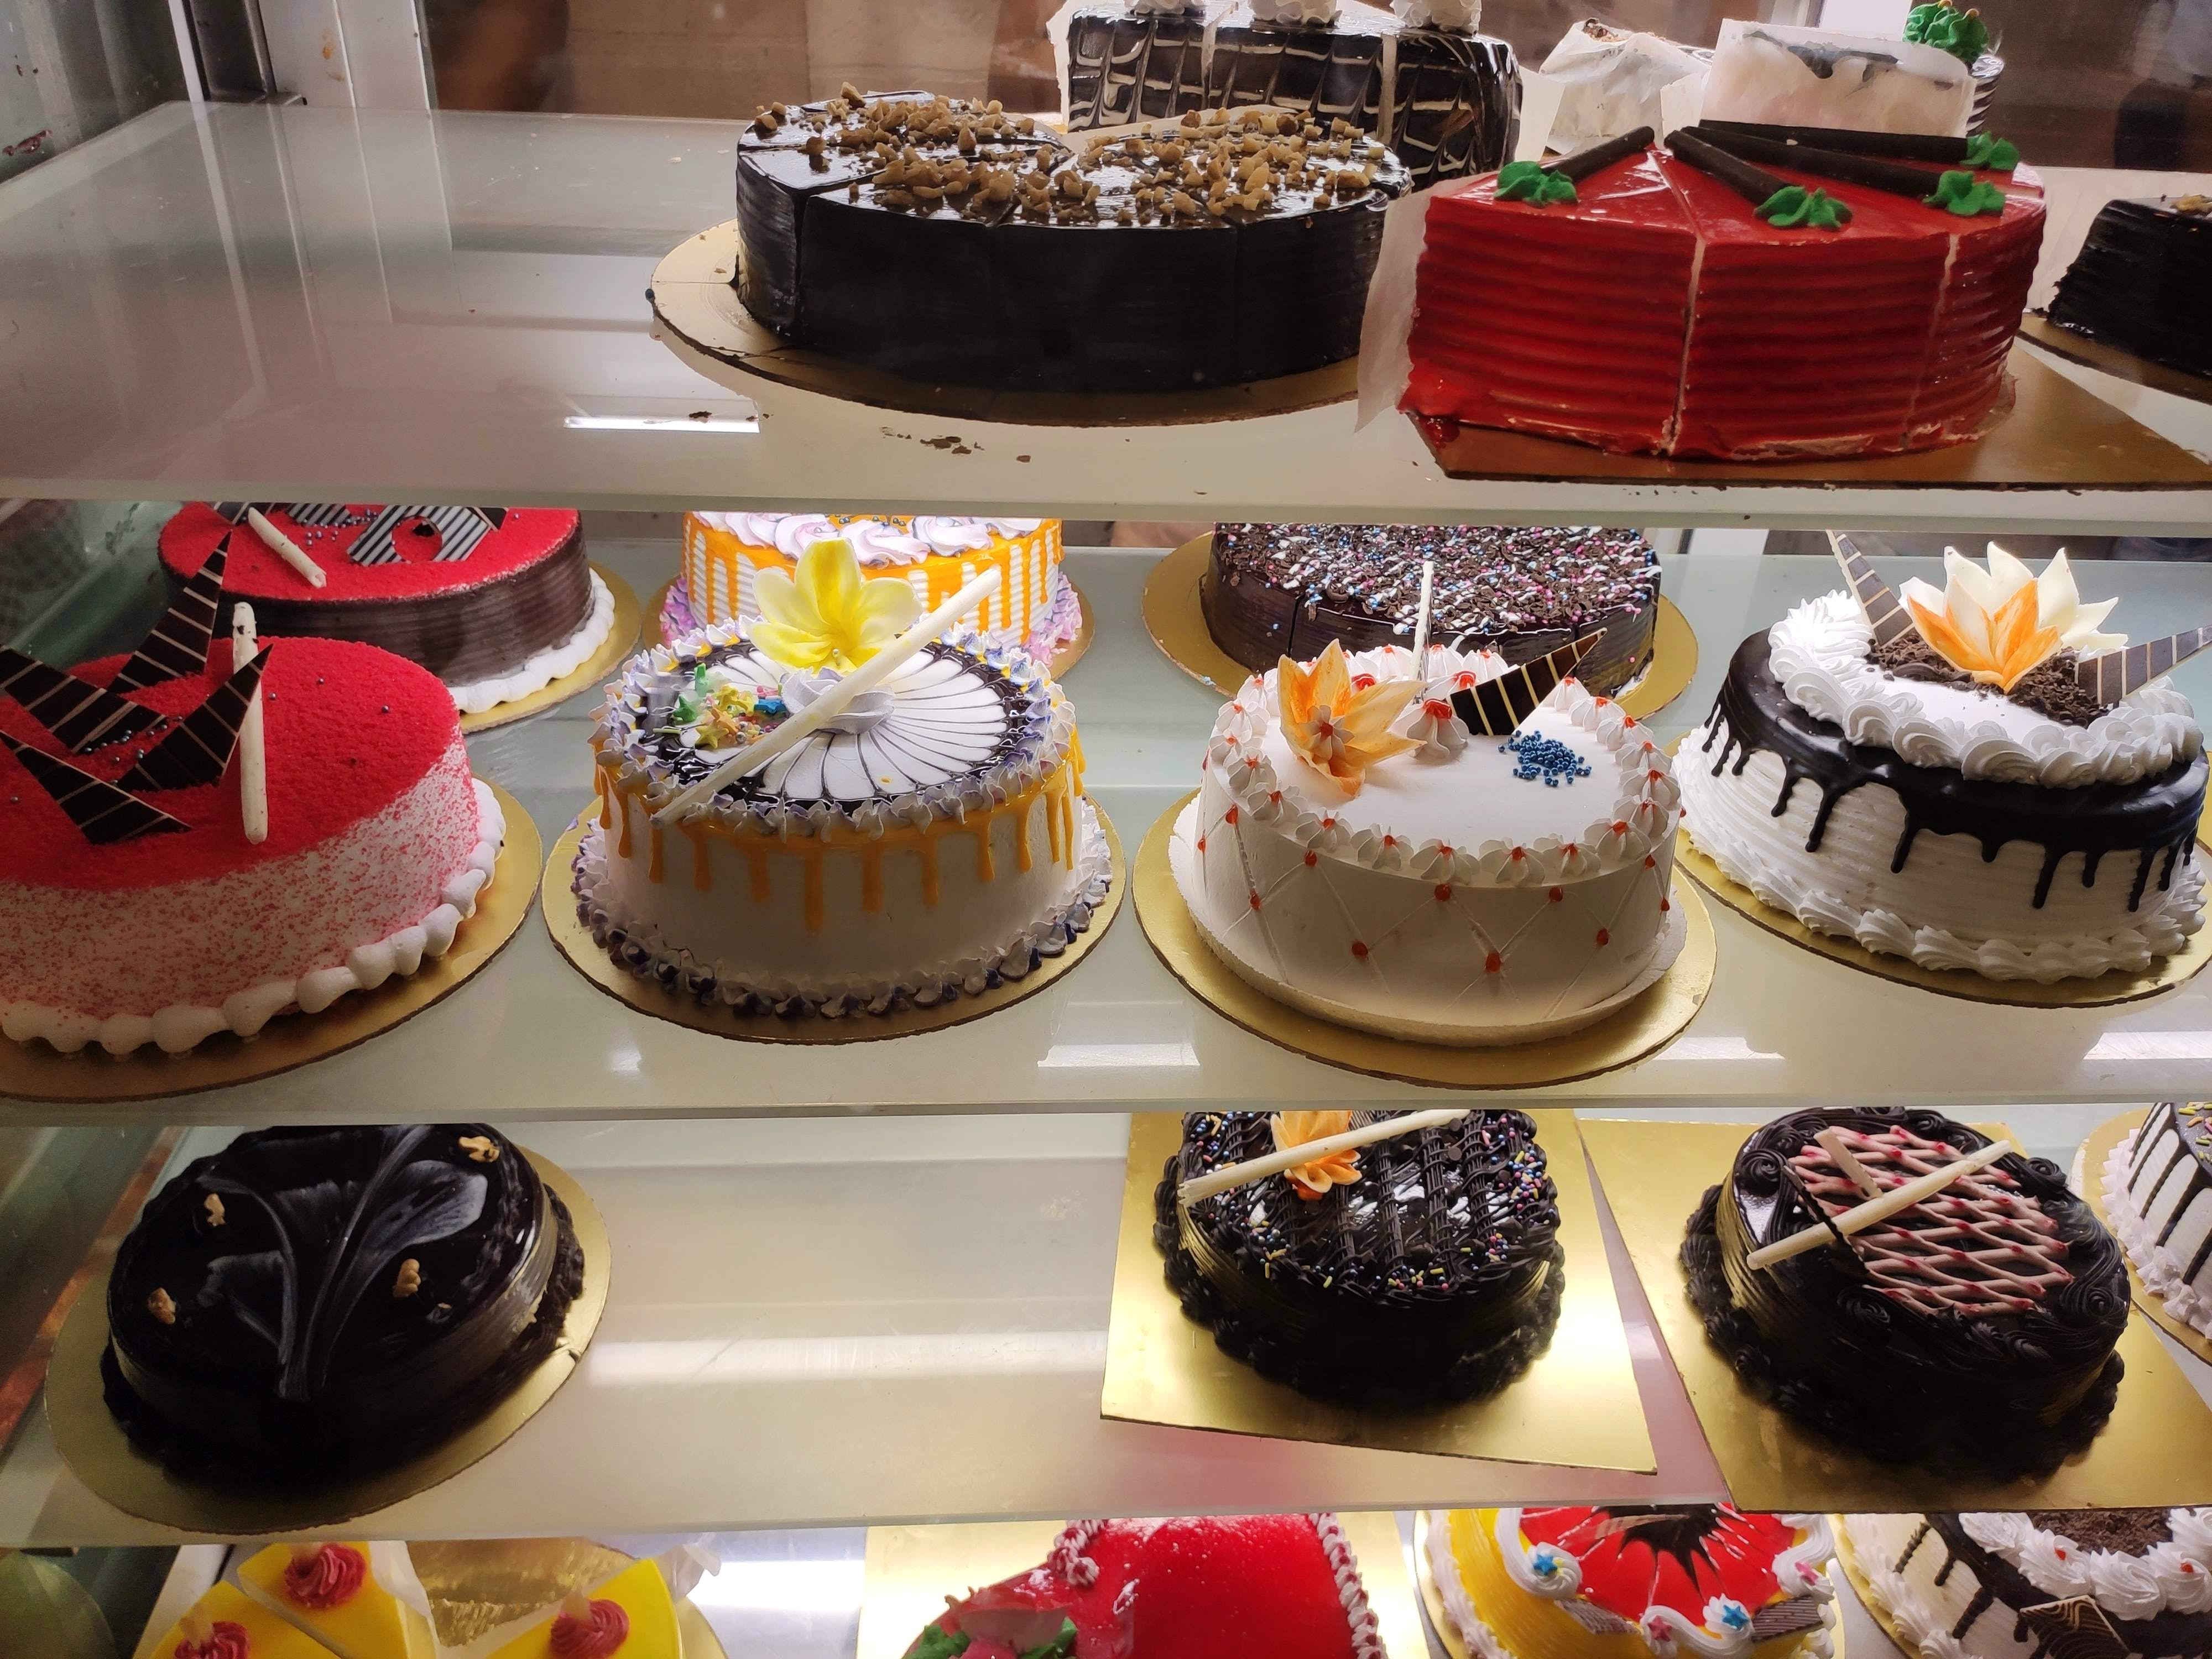 7th Heaven - Cake Shop - Kundapur, Karnataka - Around Mangalore